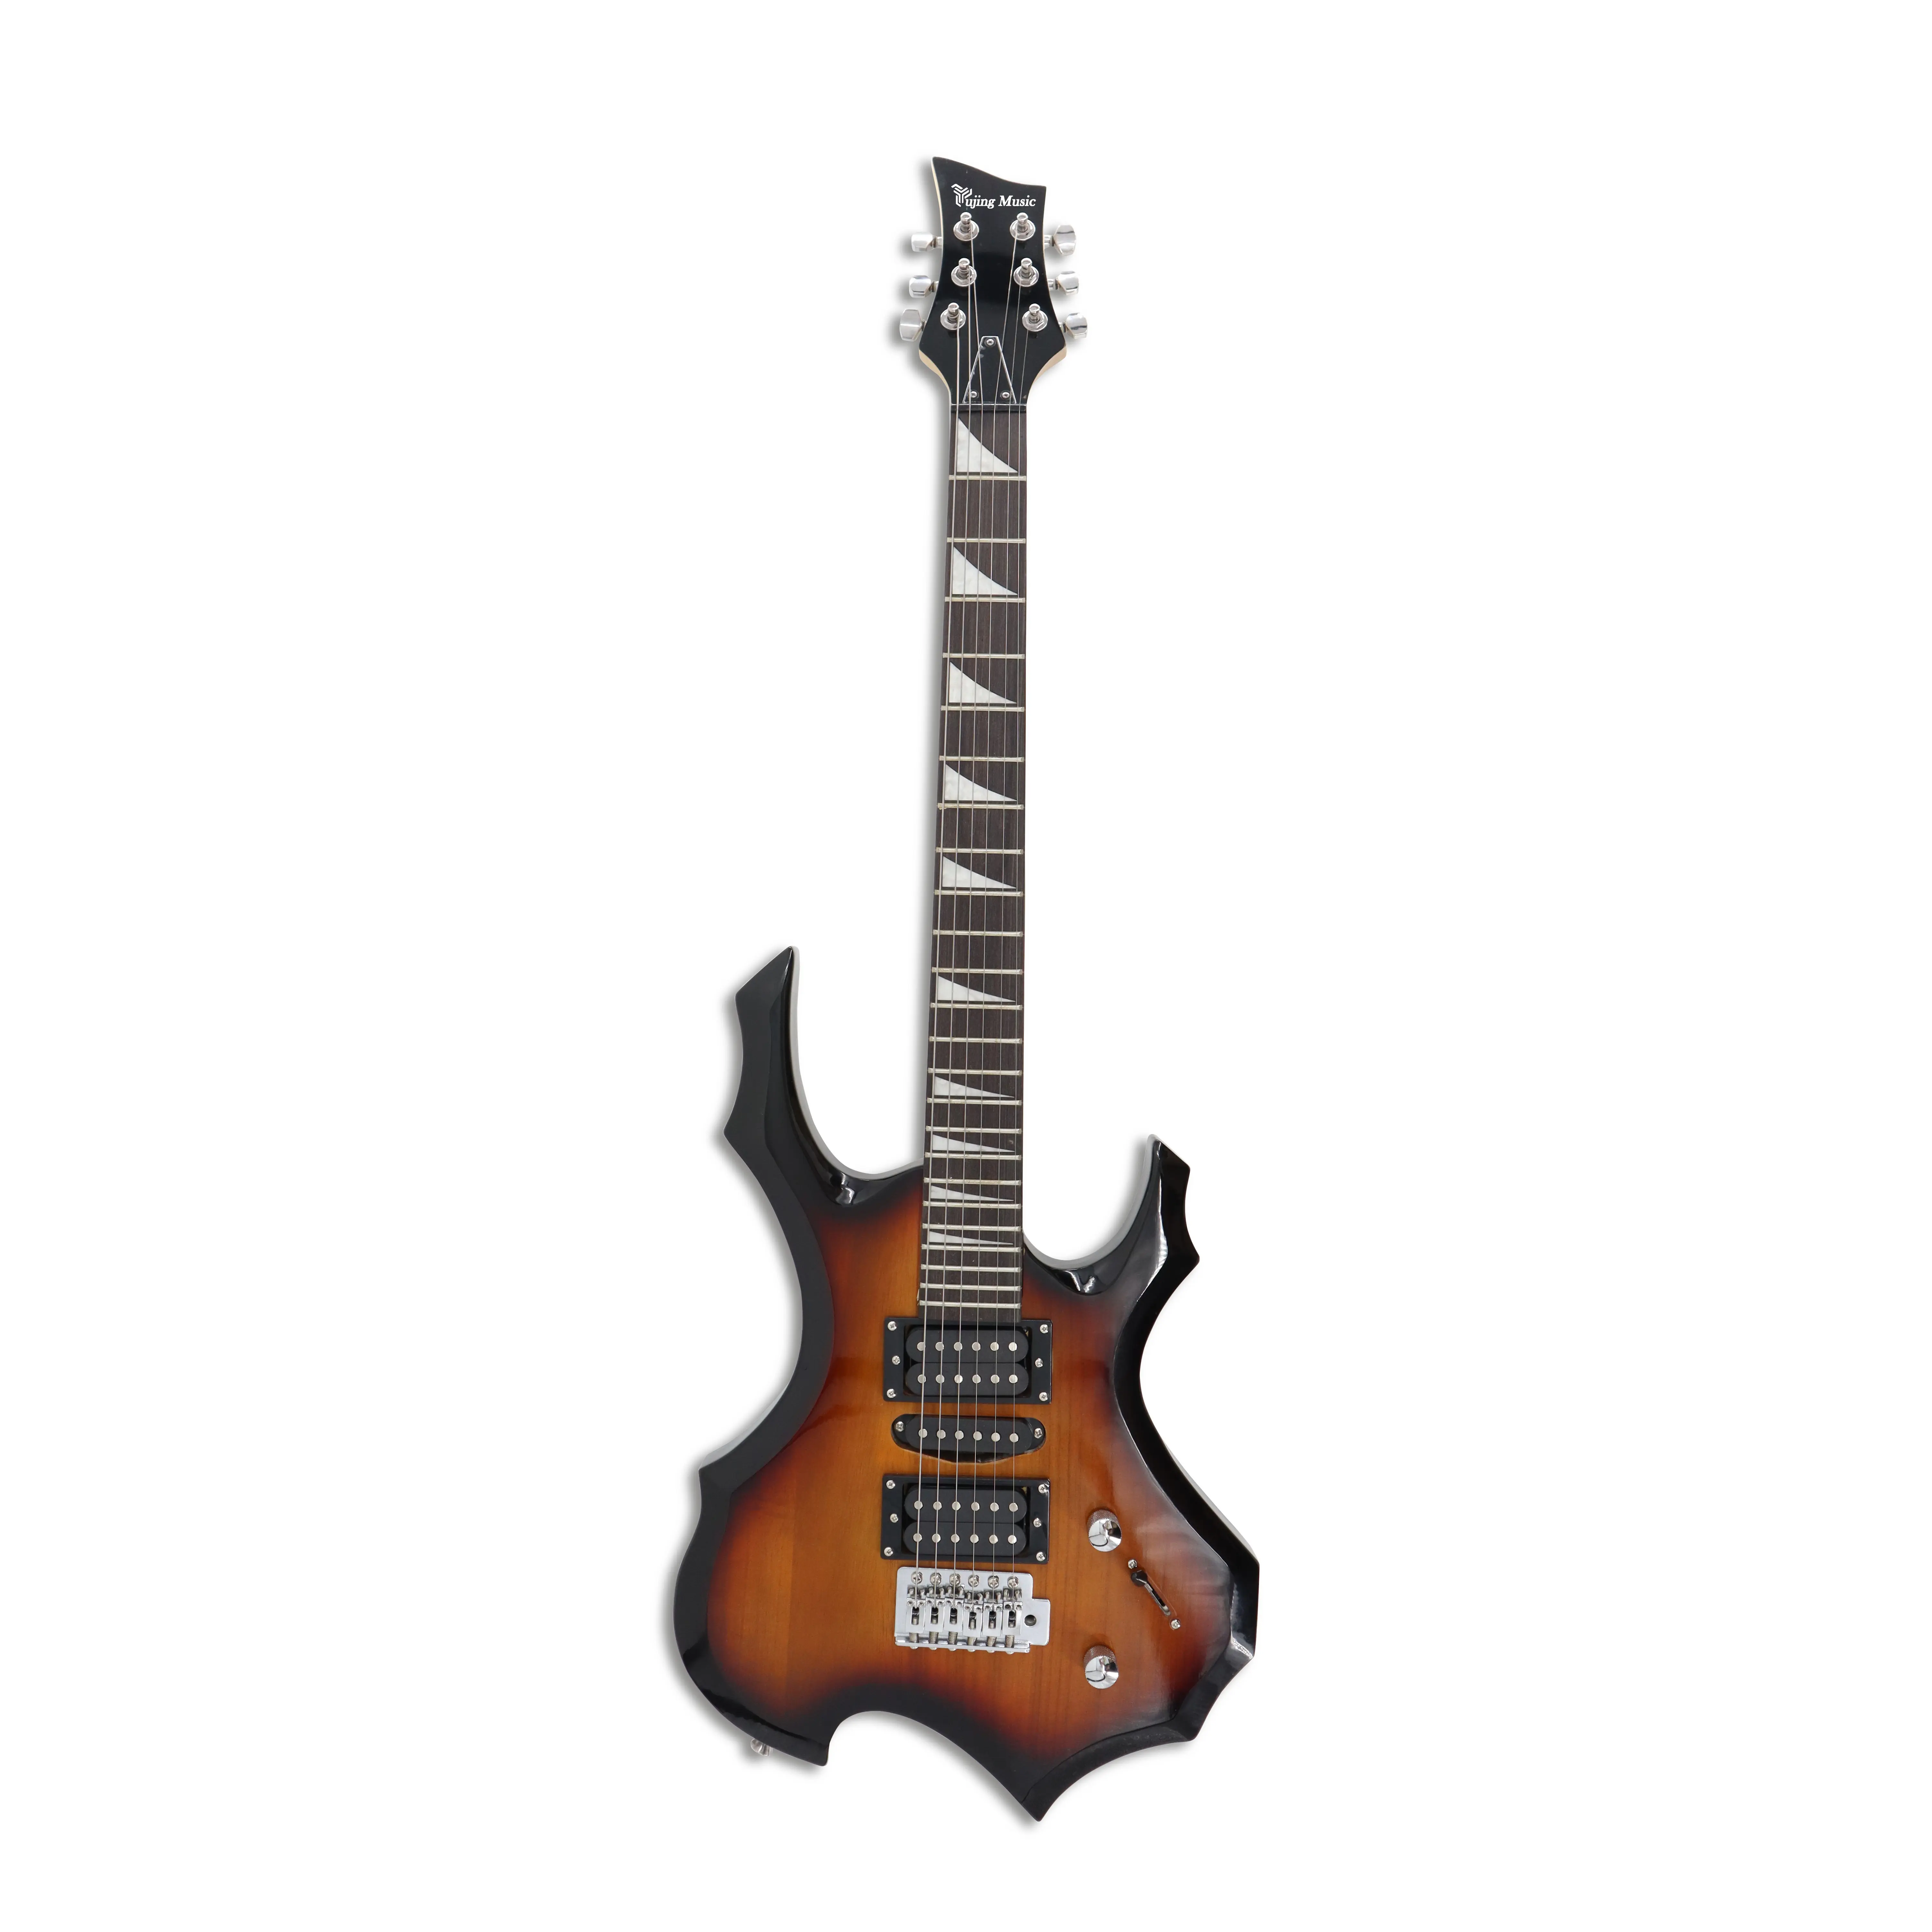 Yujing Music framus diablo custom guitare neck YST-13 semi hollow guitar body tl Electric Guitar